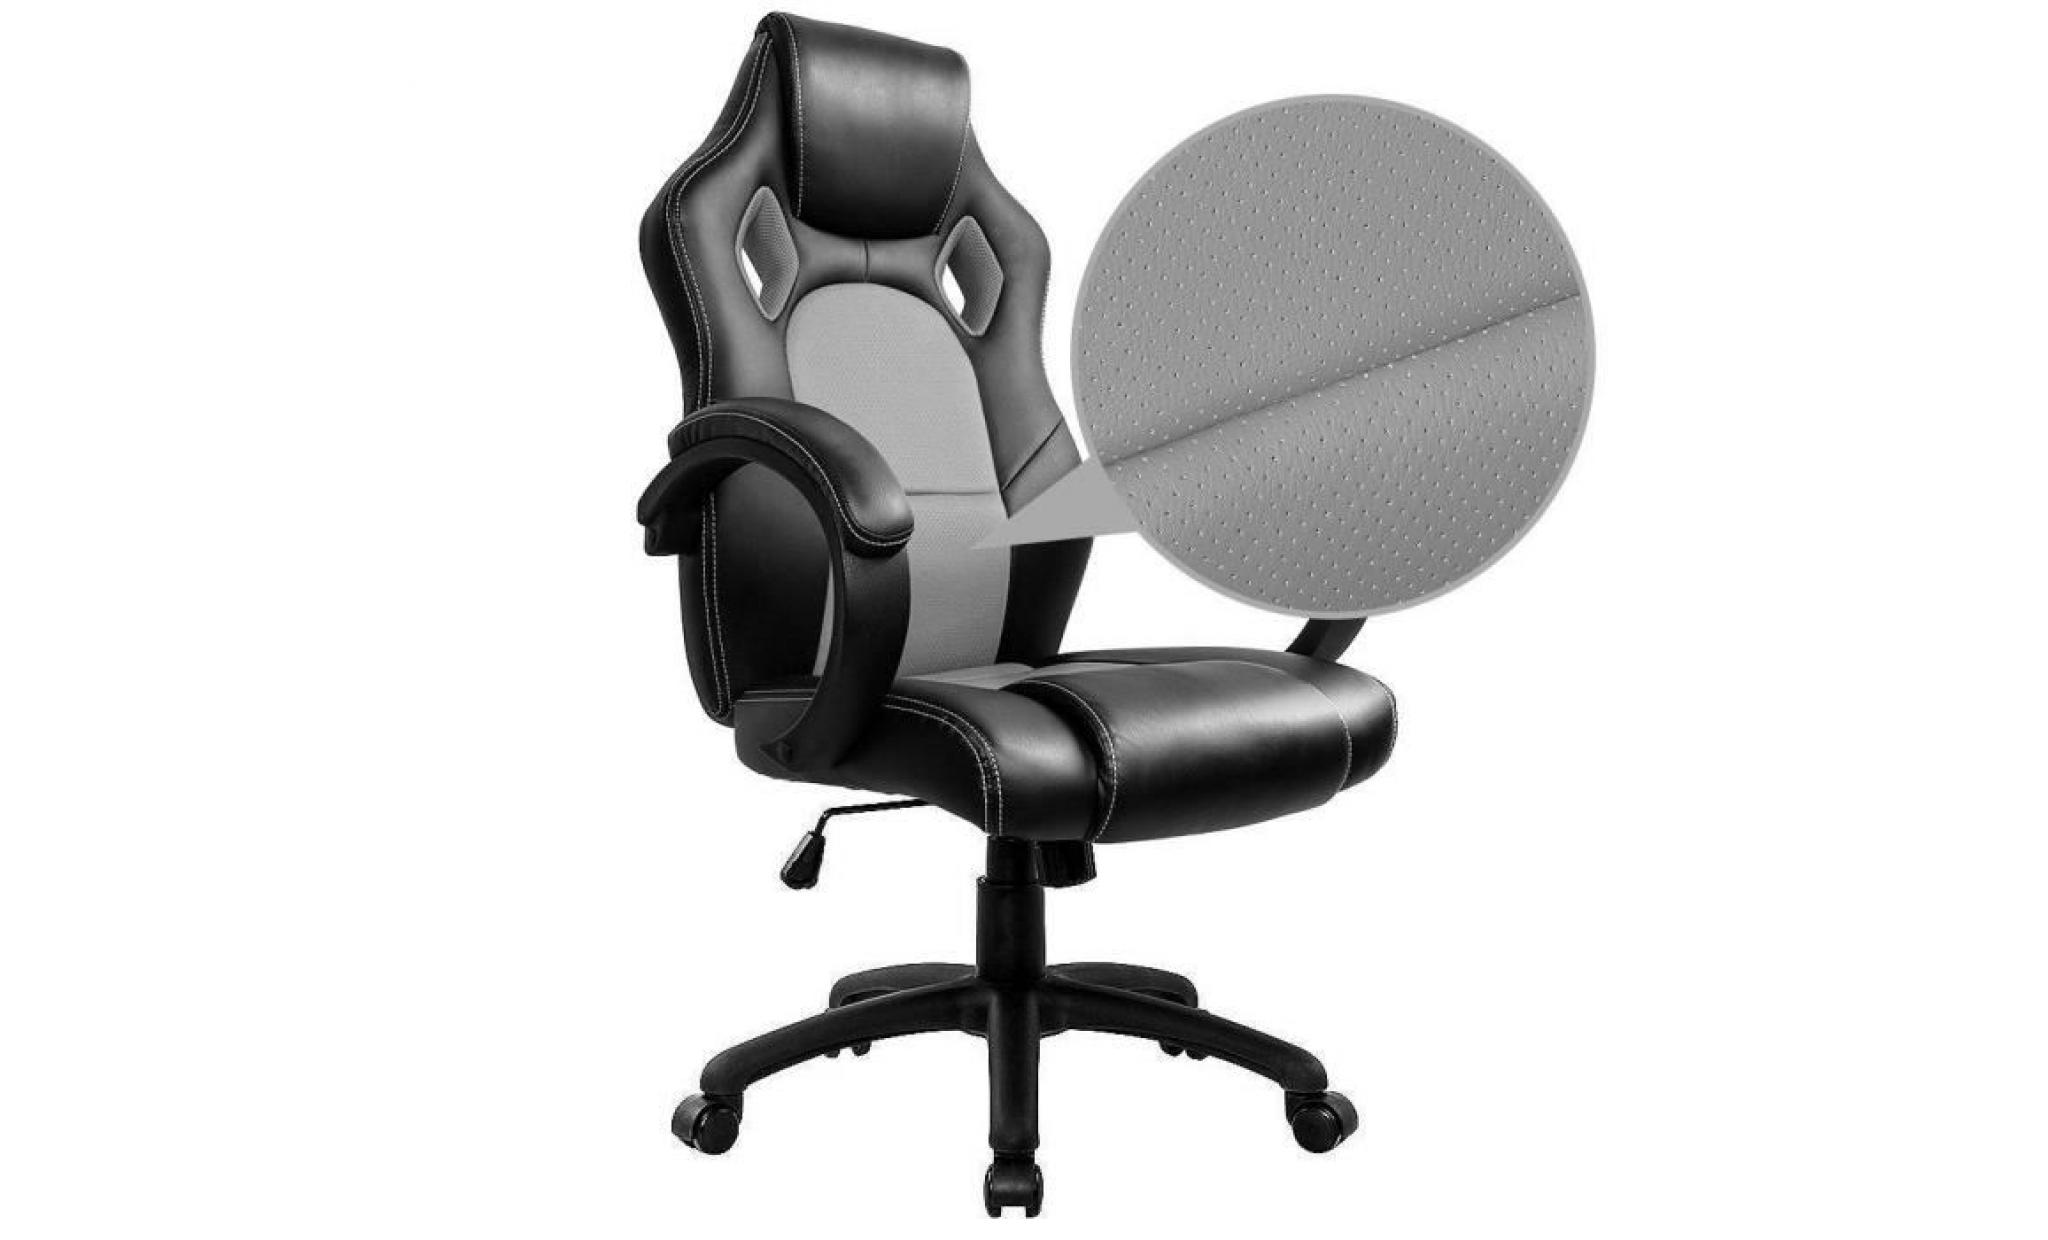 chaise de bureau gaming chaise   moderne confortable ergonomique en similicuir pu   hauteur réglable   gris   intimate wm heart pas cher